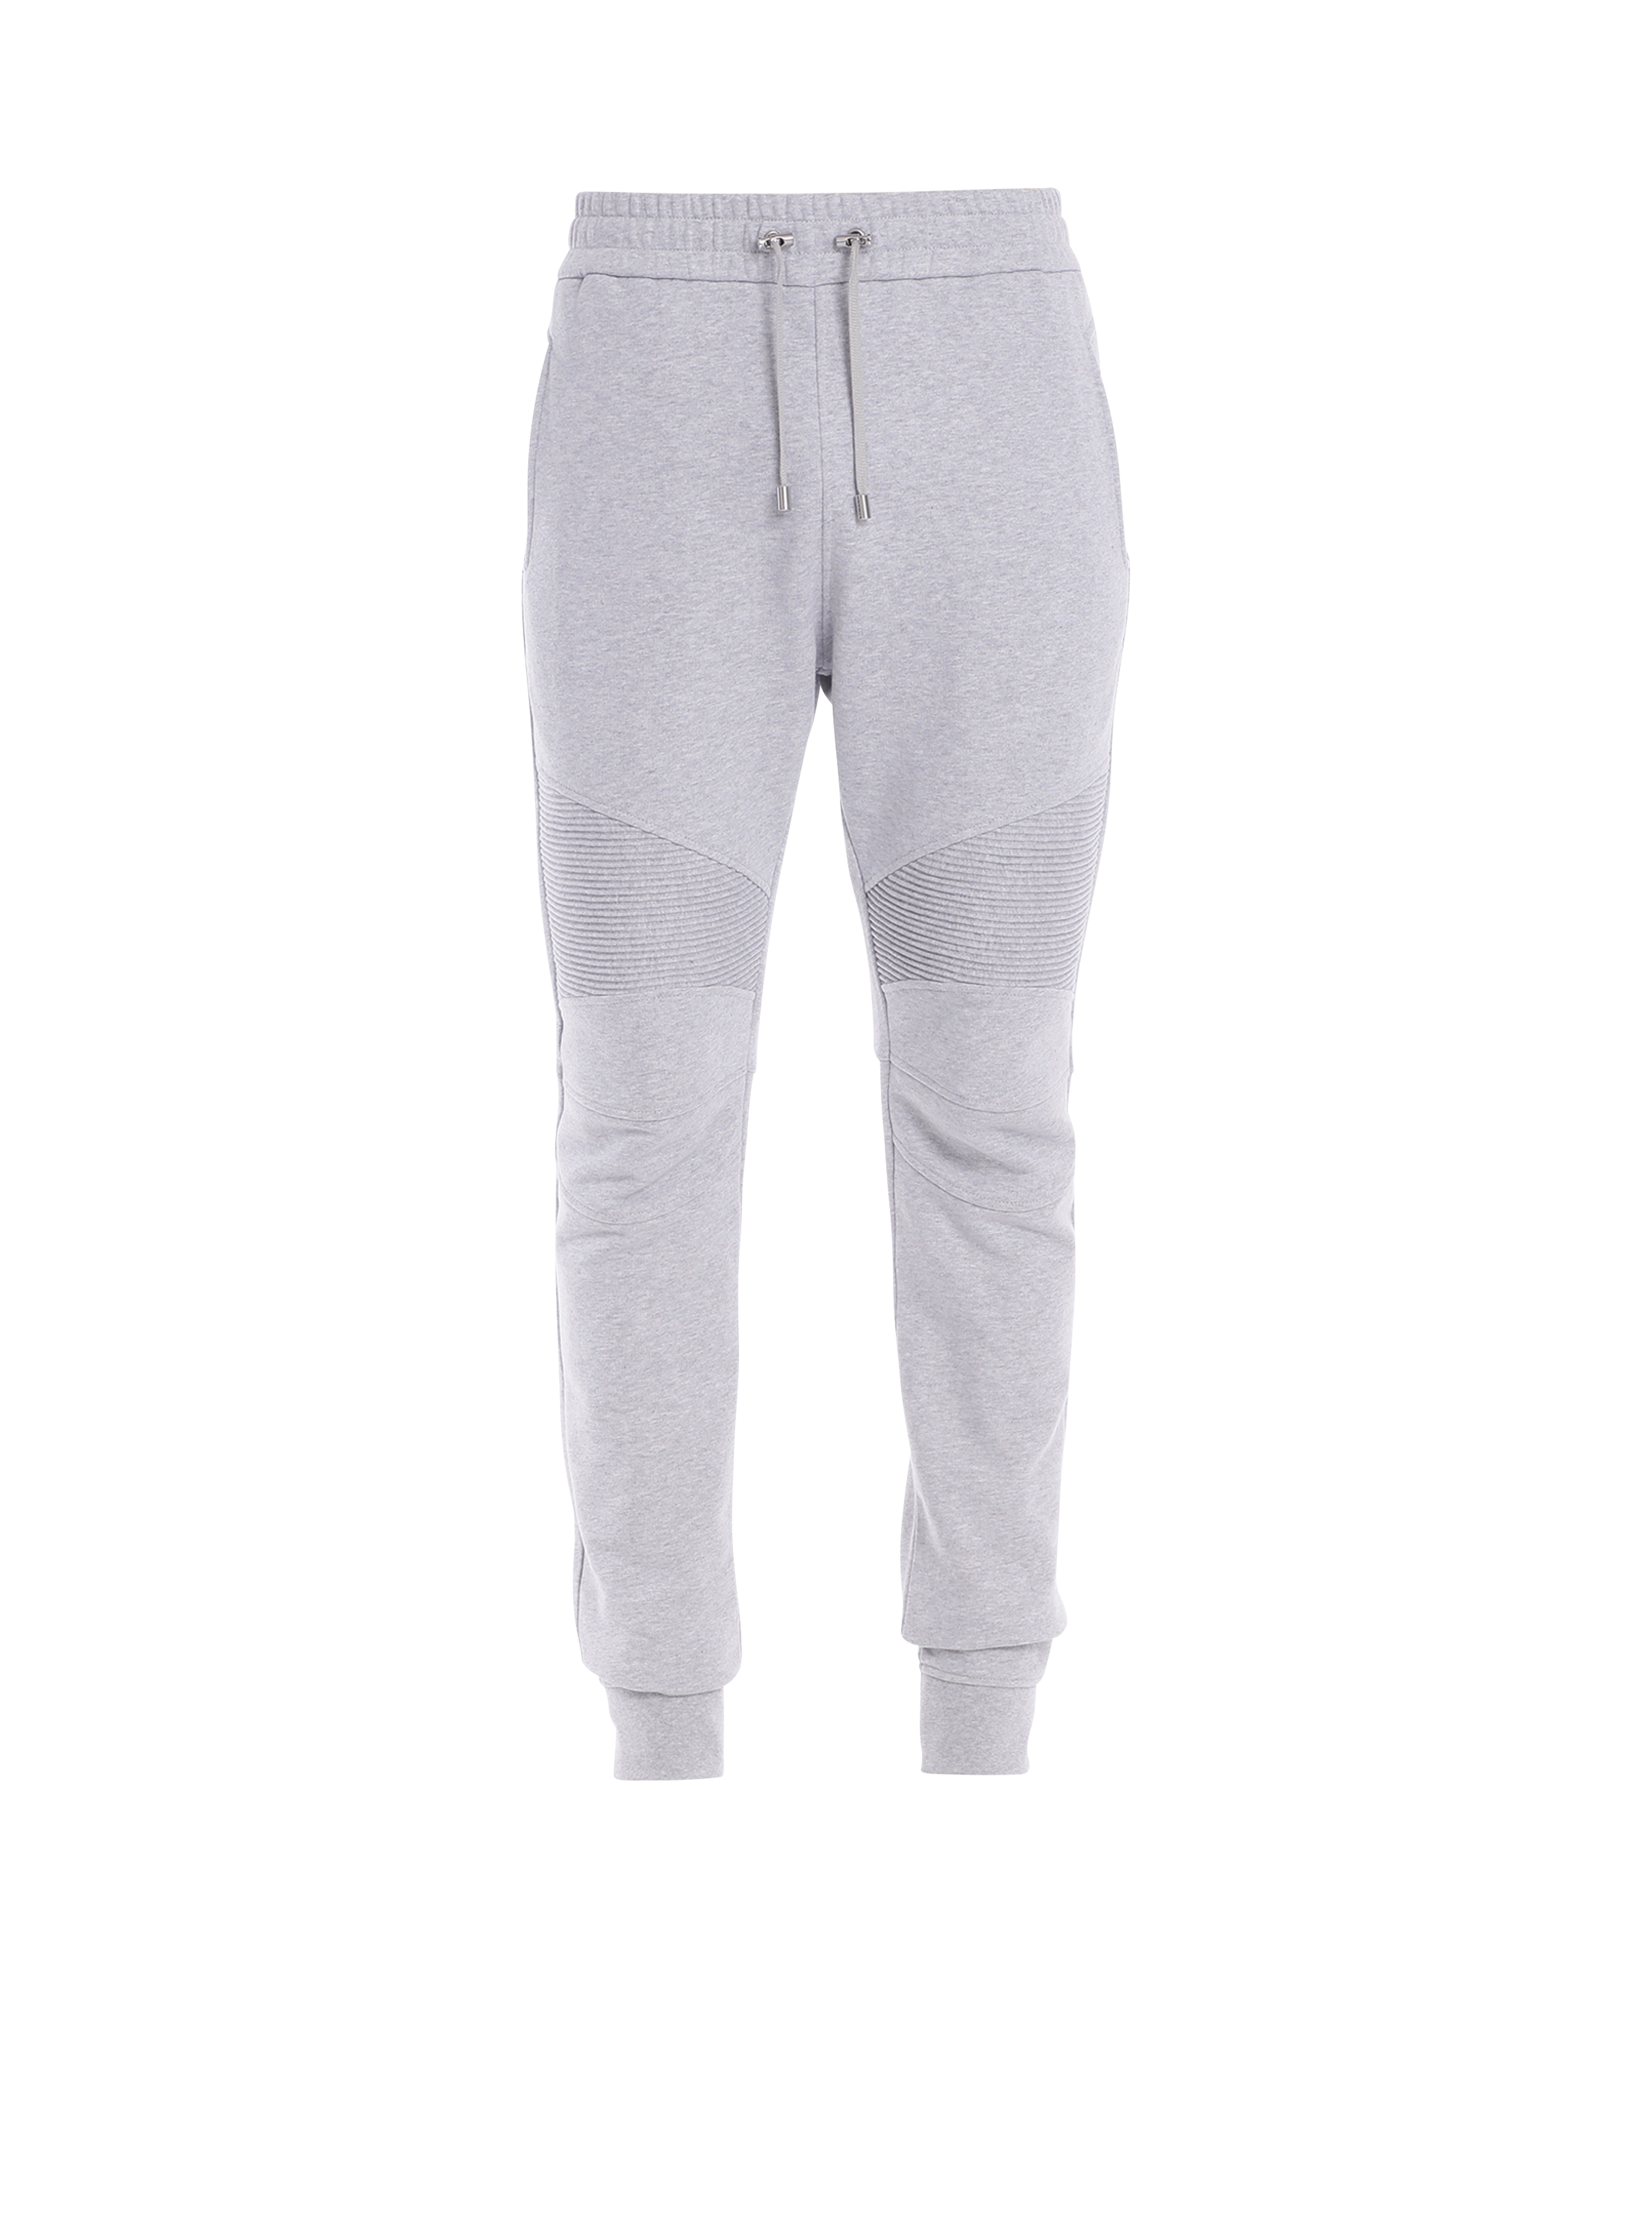 Cotton sweatpants with Balmain Paris logo, grey